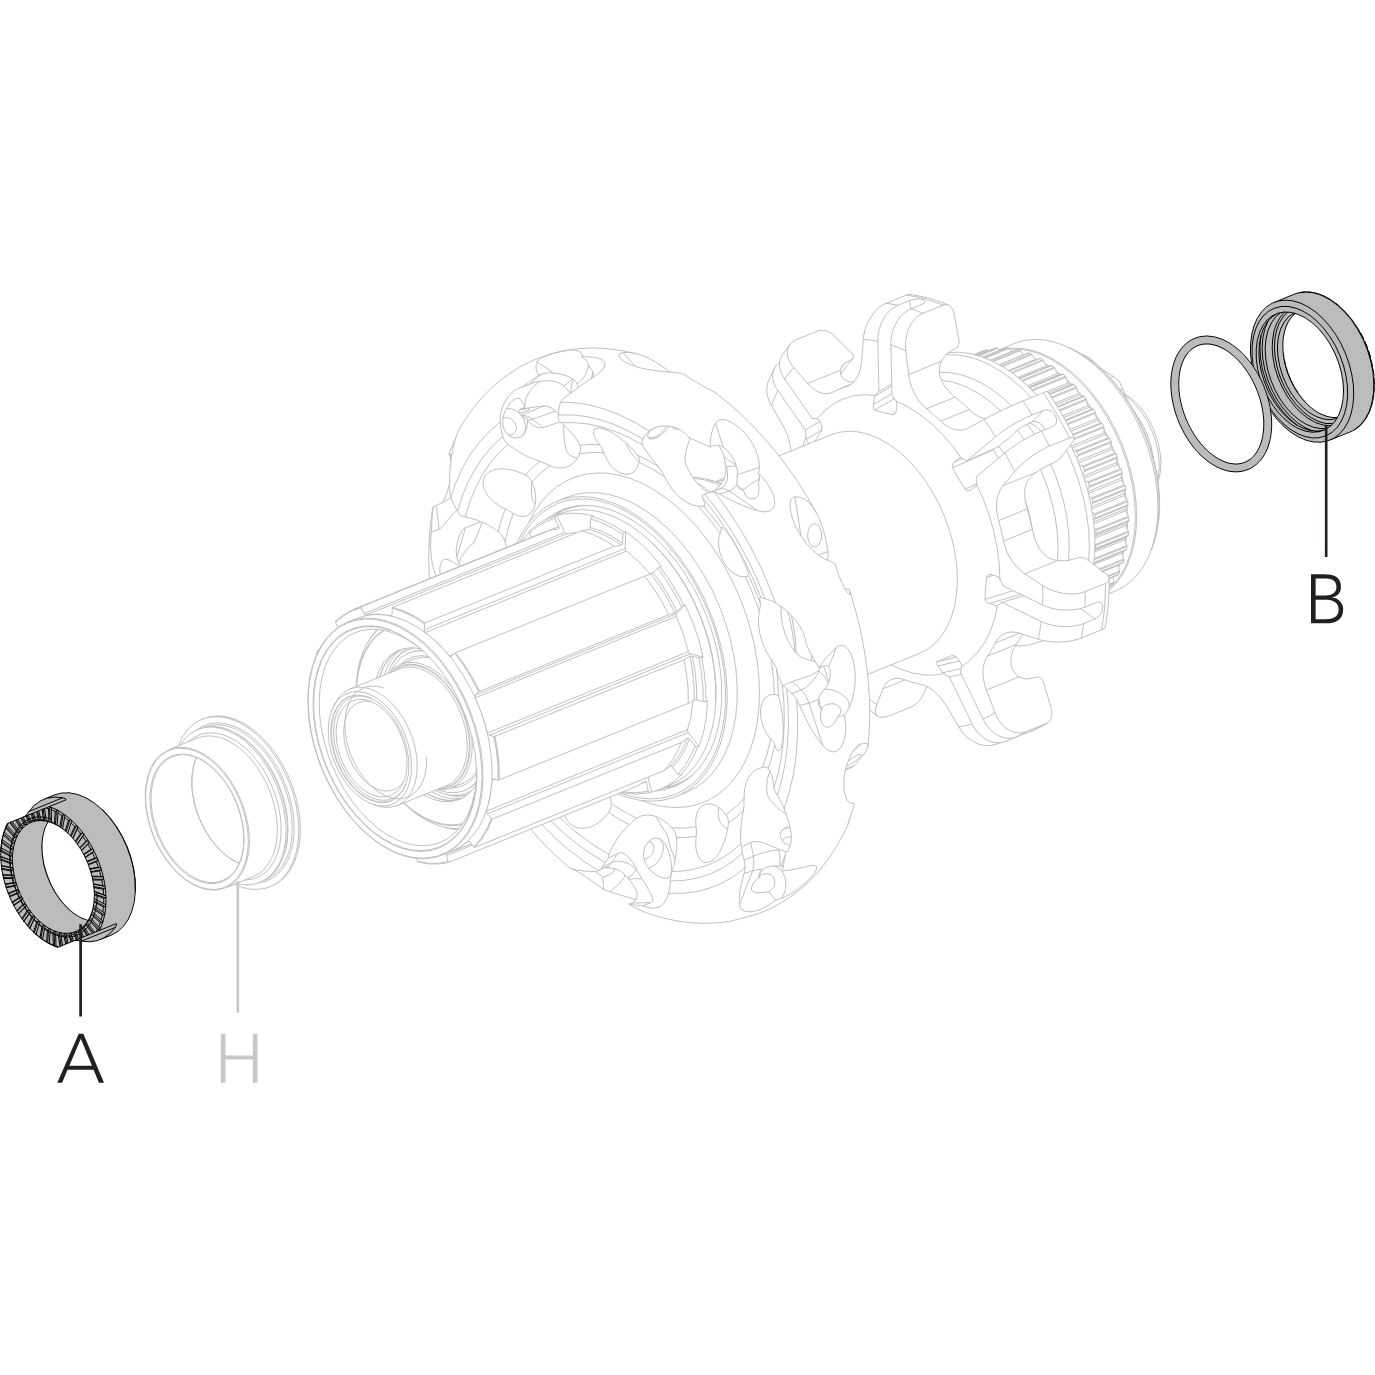 Produktbild von Fulcrum HR Adapterkit auf 12x135mm Steckachse (A+B) - RM16-TA12135